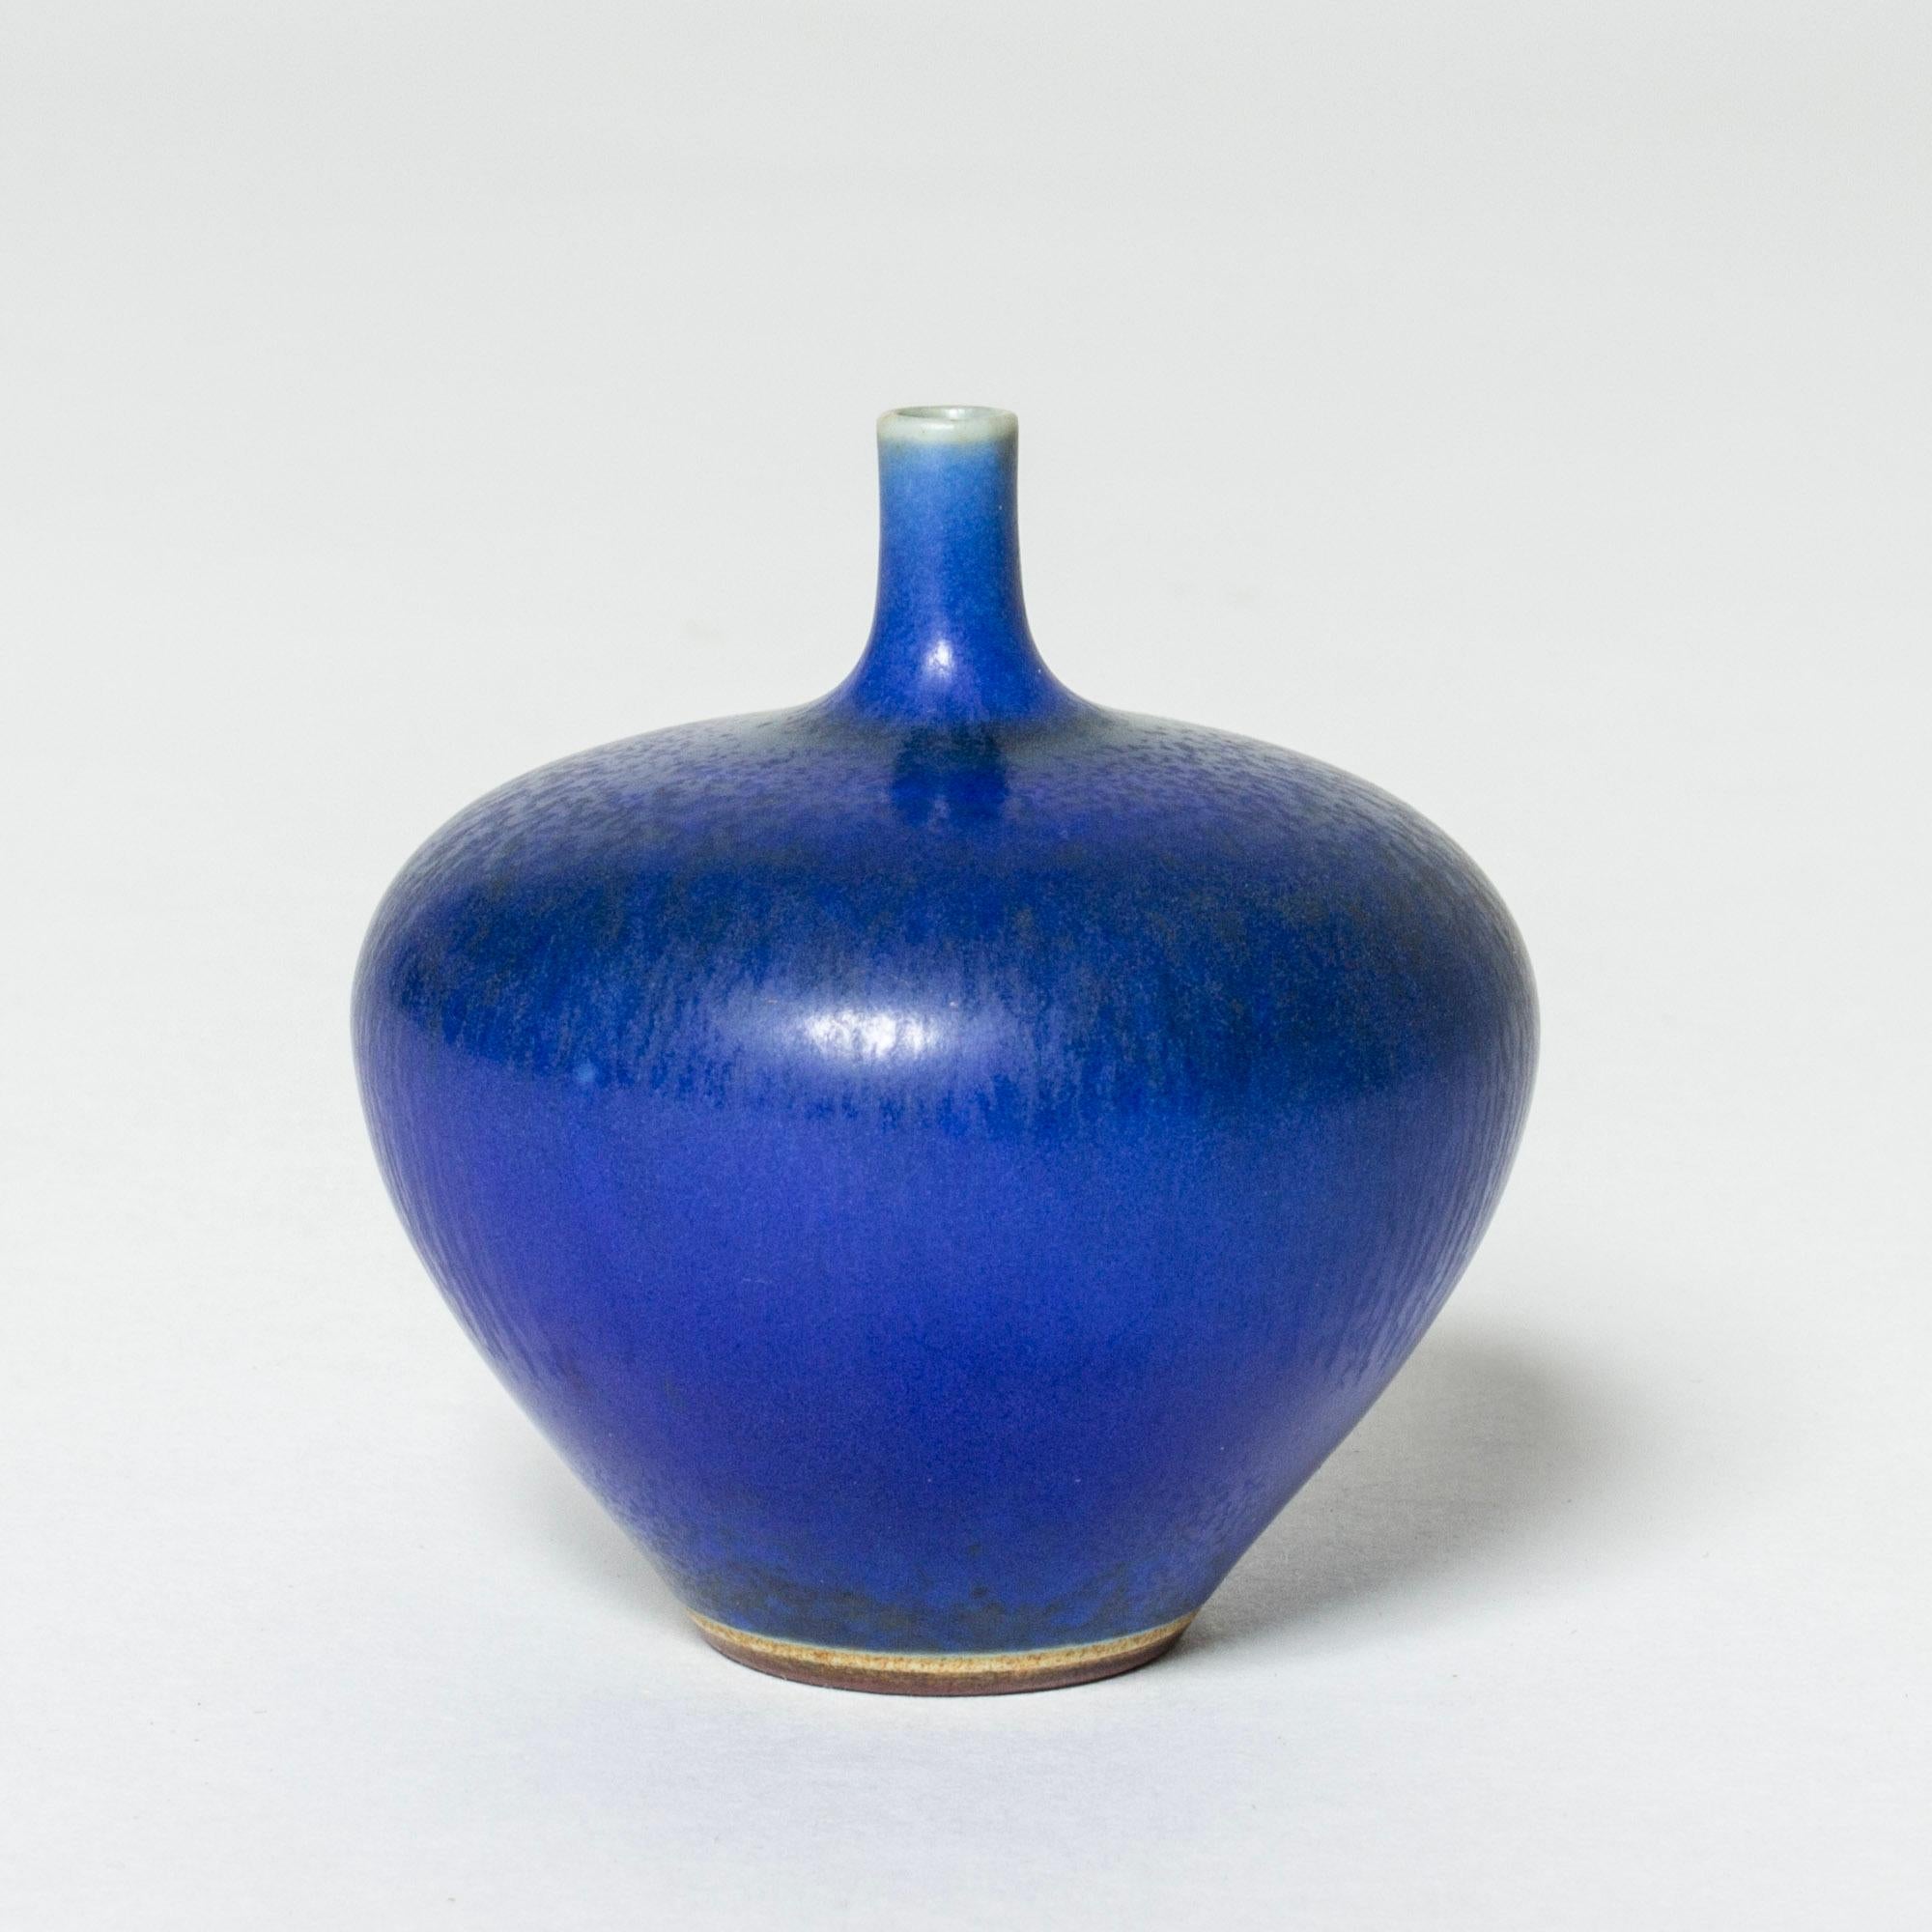 Vase miniature en grès de Berndt Friberg en forme de pomme dodue. Glaçage bleu vibrant de la fourrure de lièvre.

Berndt Friberg était un céramiste suédois, renommé pour ses vases en grès et ses récipients pour Gustavsberg. Ses créations pures et